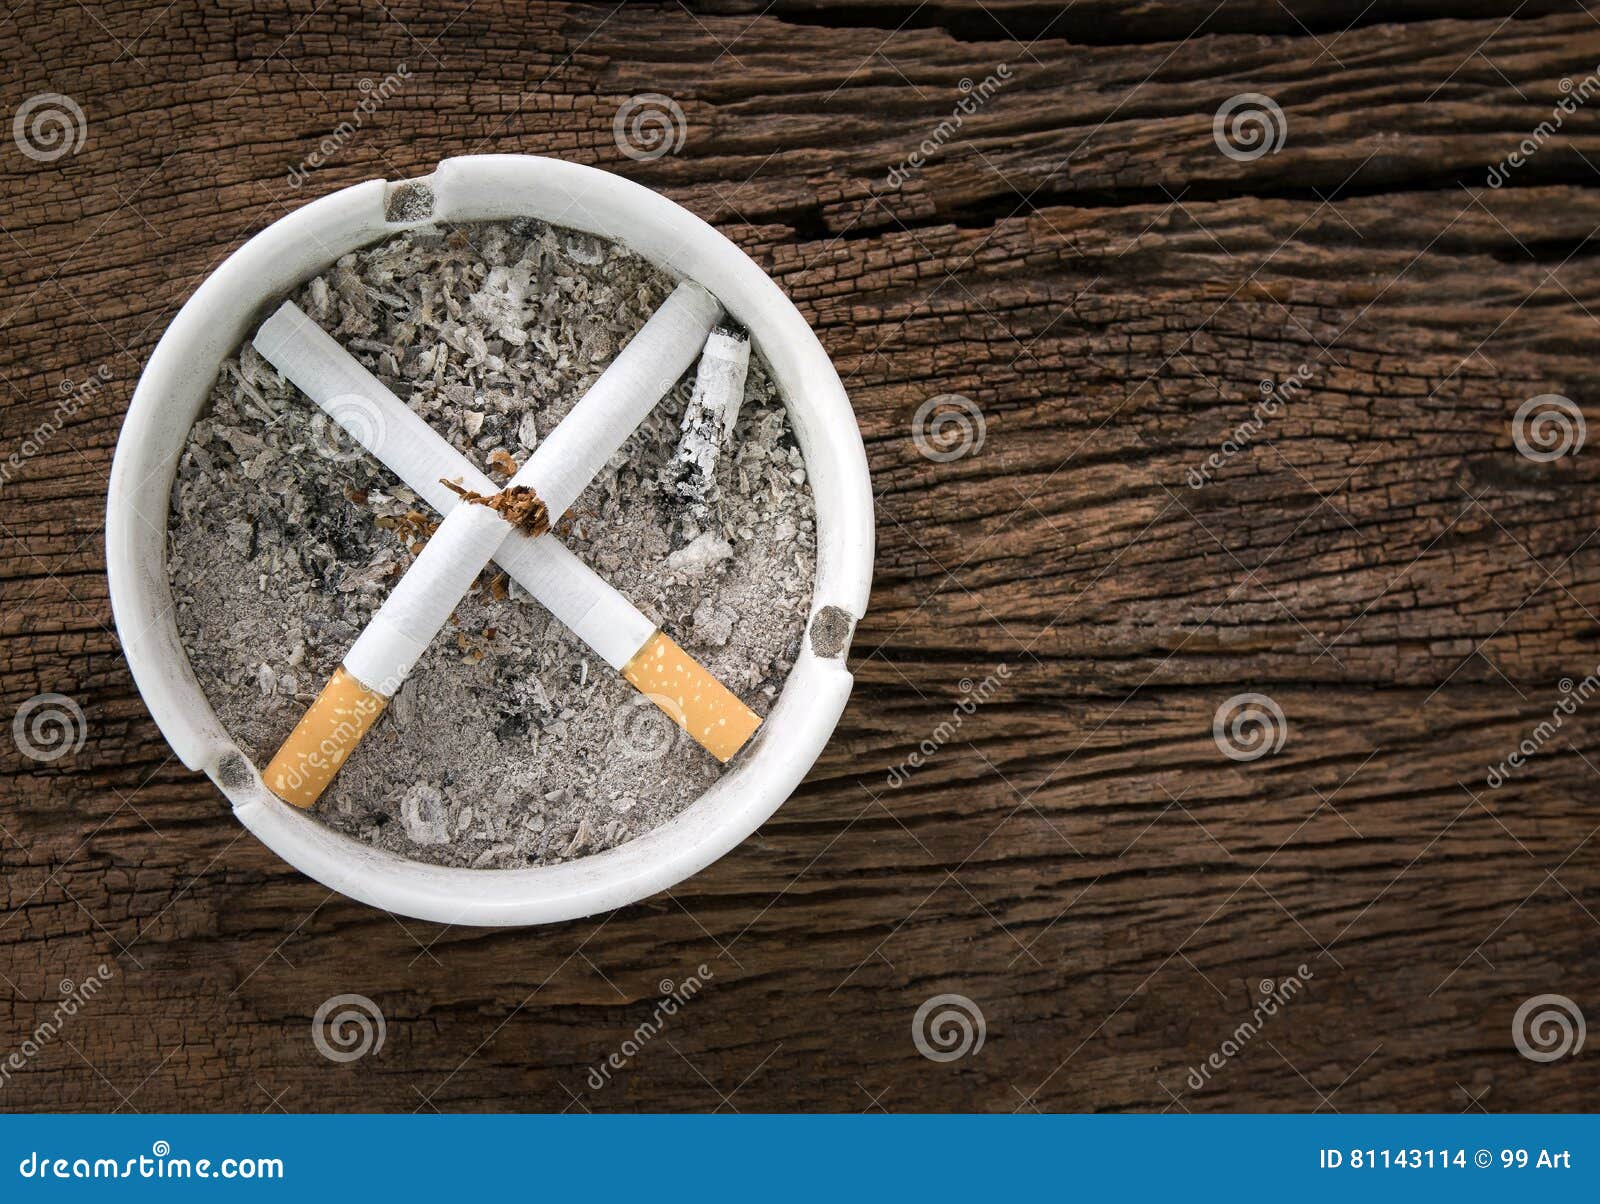 Для некурящих знак от сигарет в ashtray сигарет на деревянных животиках. Для некурящих знак от сигарет в ashtray сигарет на деревянной таблице